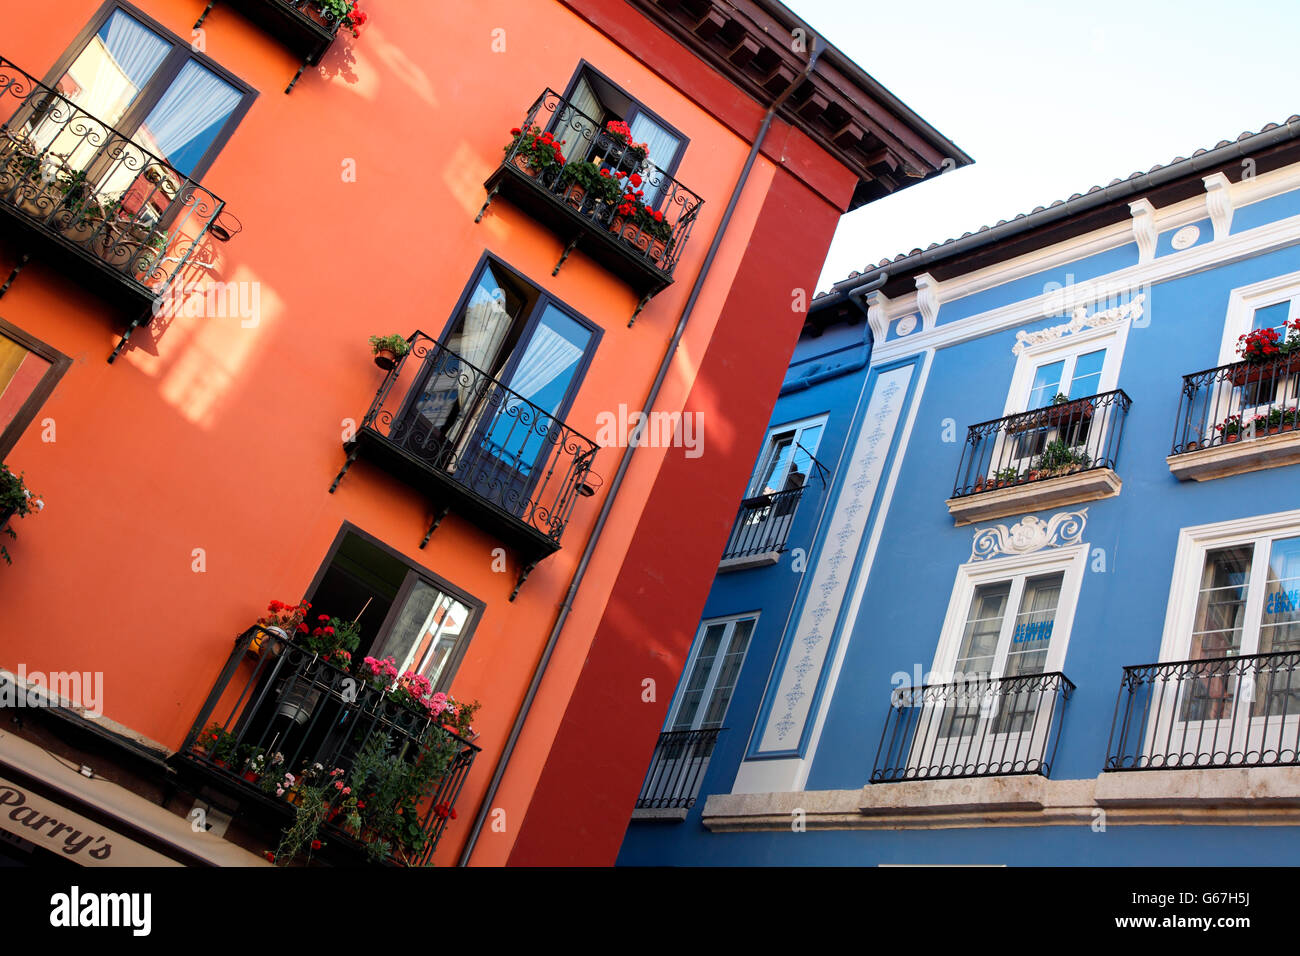 Colourful facades in Burgos Stock Photo